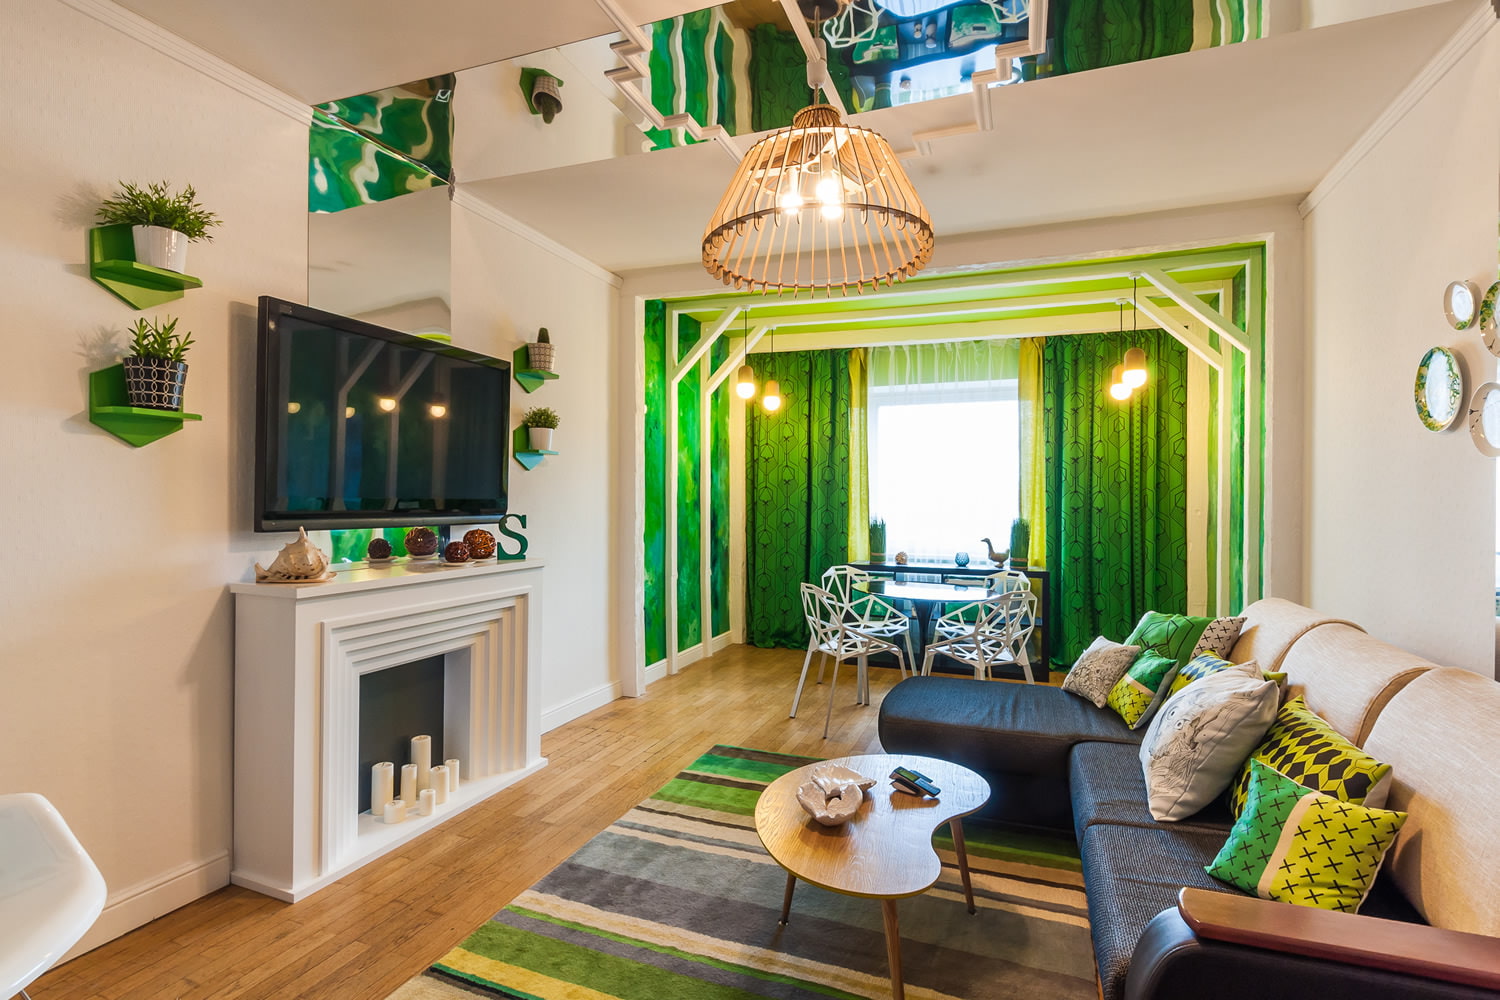 غرفة المعيشة في الصورة الخضراء